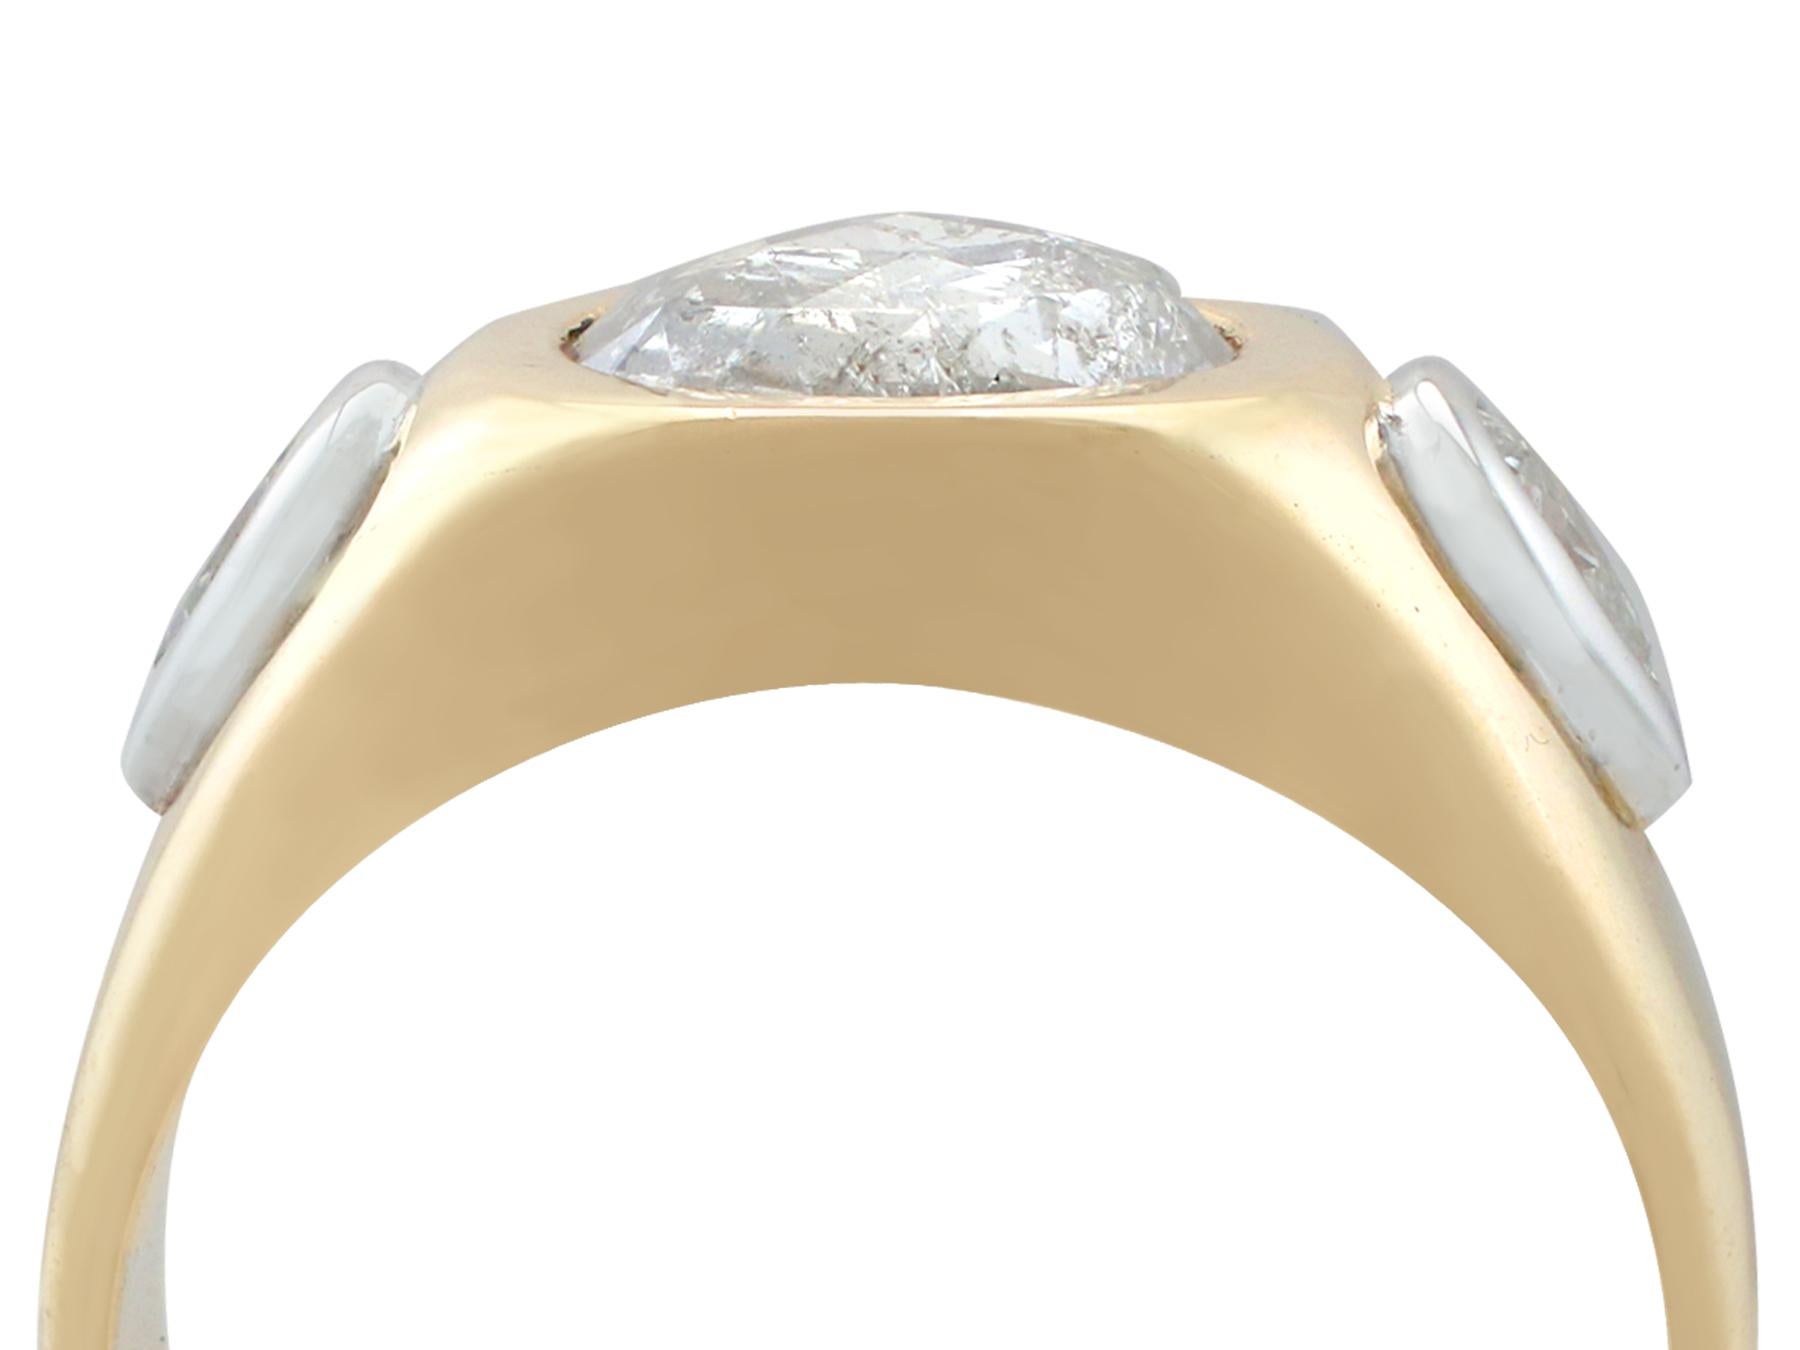 Une impressionnante bague vintage française de style sigillaire sertie de 1,45 ct de diamants et d'or jaune et blanc 18 carats, faisant partie de nos diverses collections de bijoux en diamant et de bijoux de succession.

Cette bague de style